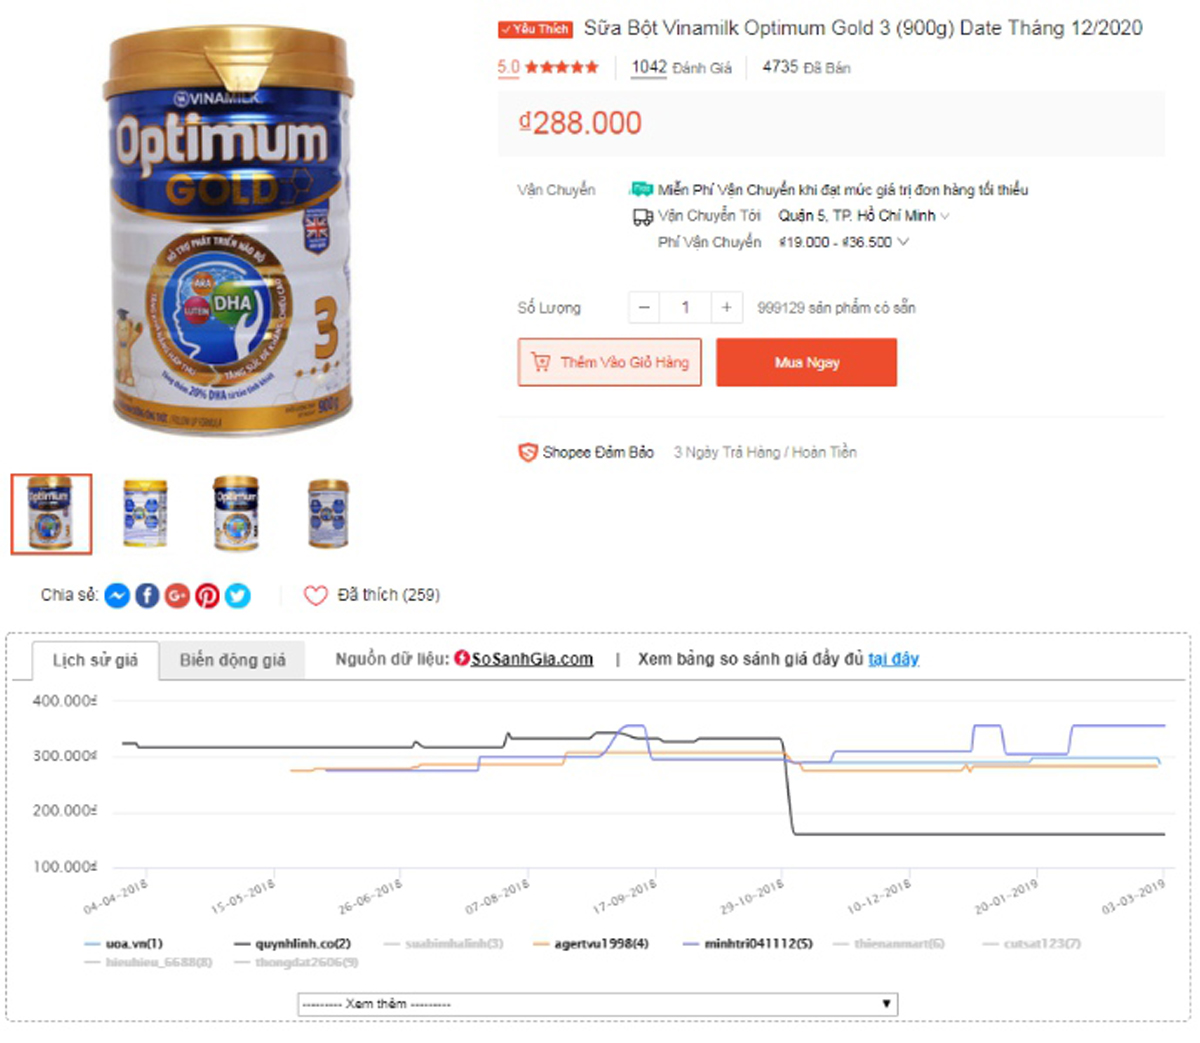 Biểu đồ so sánh lịch sử giá của các shop cùng bán sản phẩm Sữa Vinamilk Optimum 3 trên trang Shopee